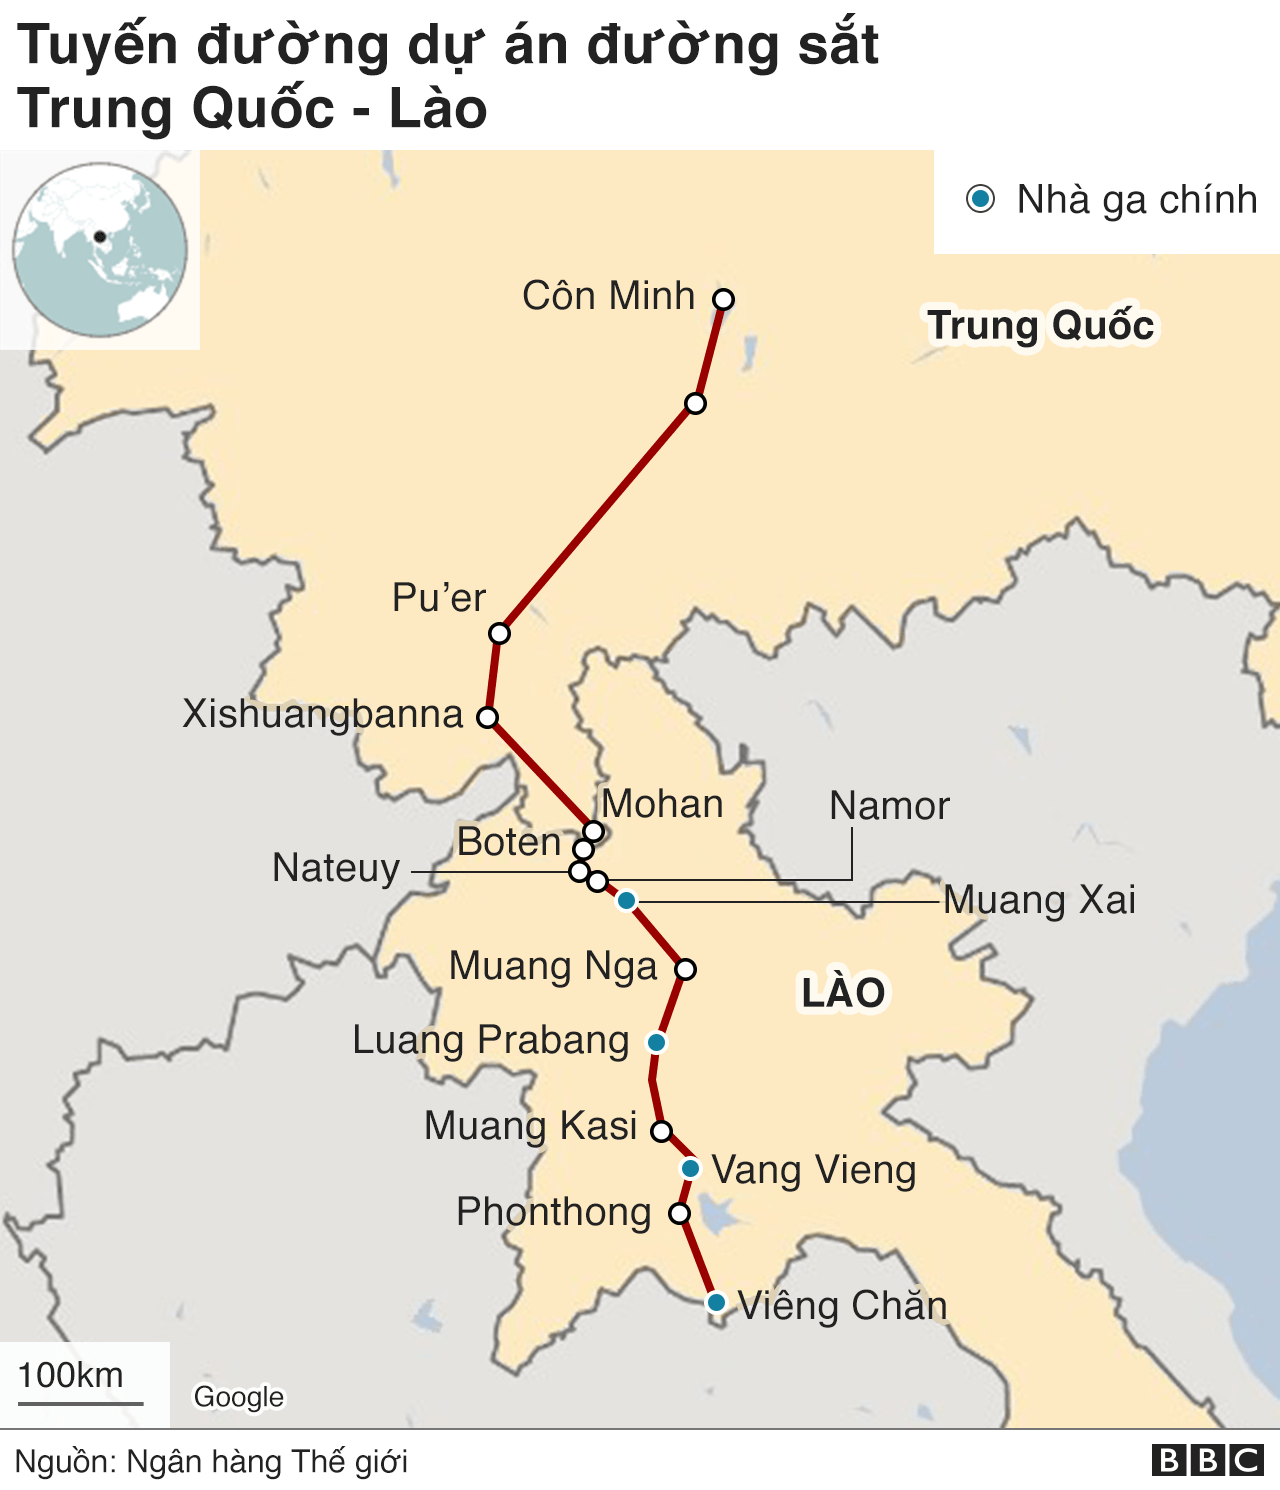 Lào sắp mở đường sắt cao tốc được xây dựng bởi Trung Quốc cho phép du khách và người dân thuận tiện di chuyển giữa các khu vực của đất nước. Để tìm hiểu thêm về đường sắt cao tốc mới trong Đông Nam Á, hãy xem hình ảnh liên quan đến bản đồ đường sắt cao tốc ở Lào.